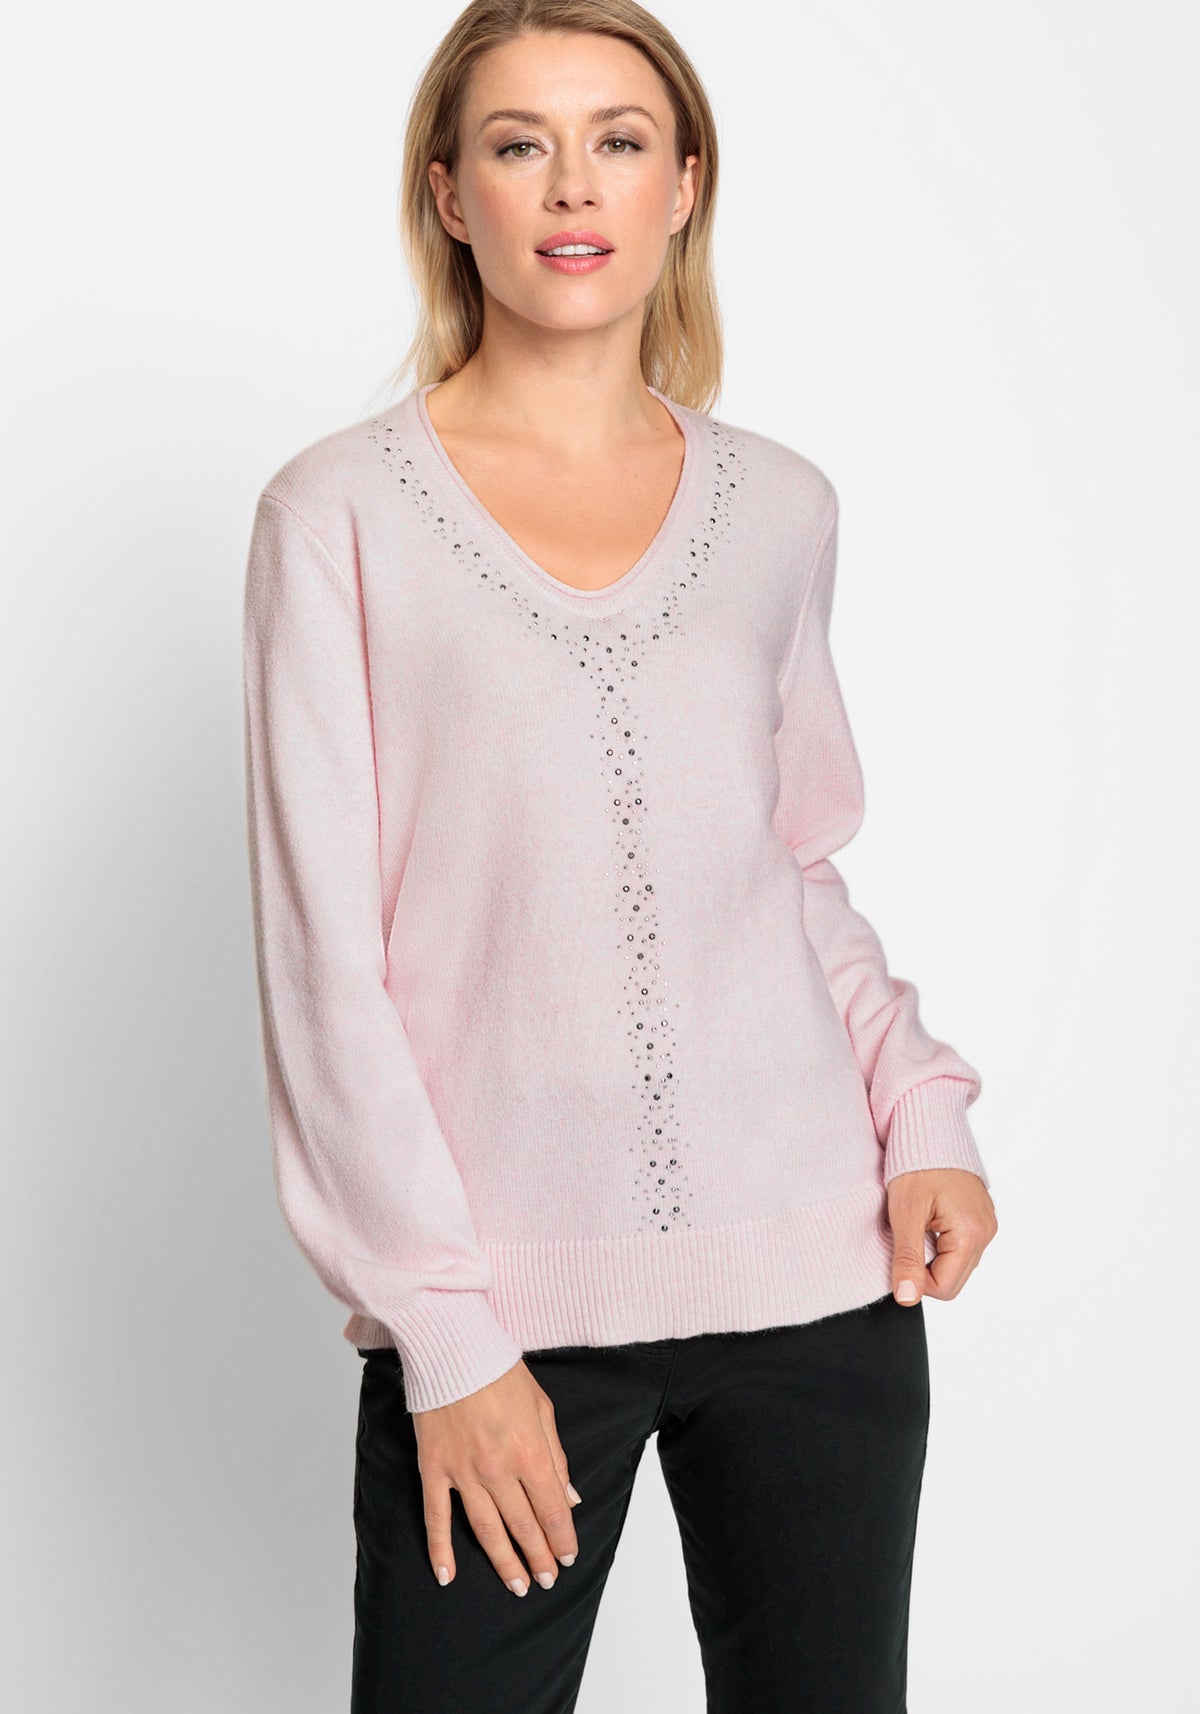 Long Sleeve Rhinestone Embellished Sweater